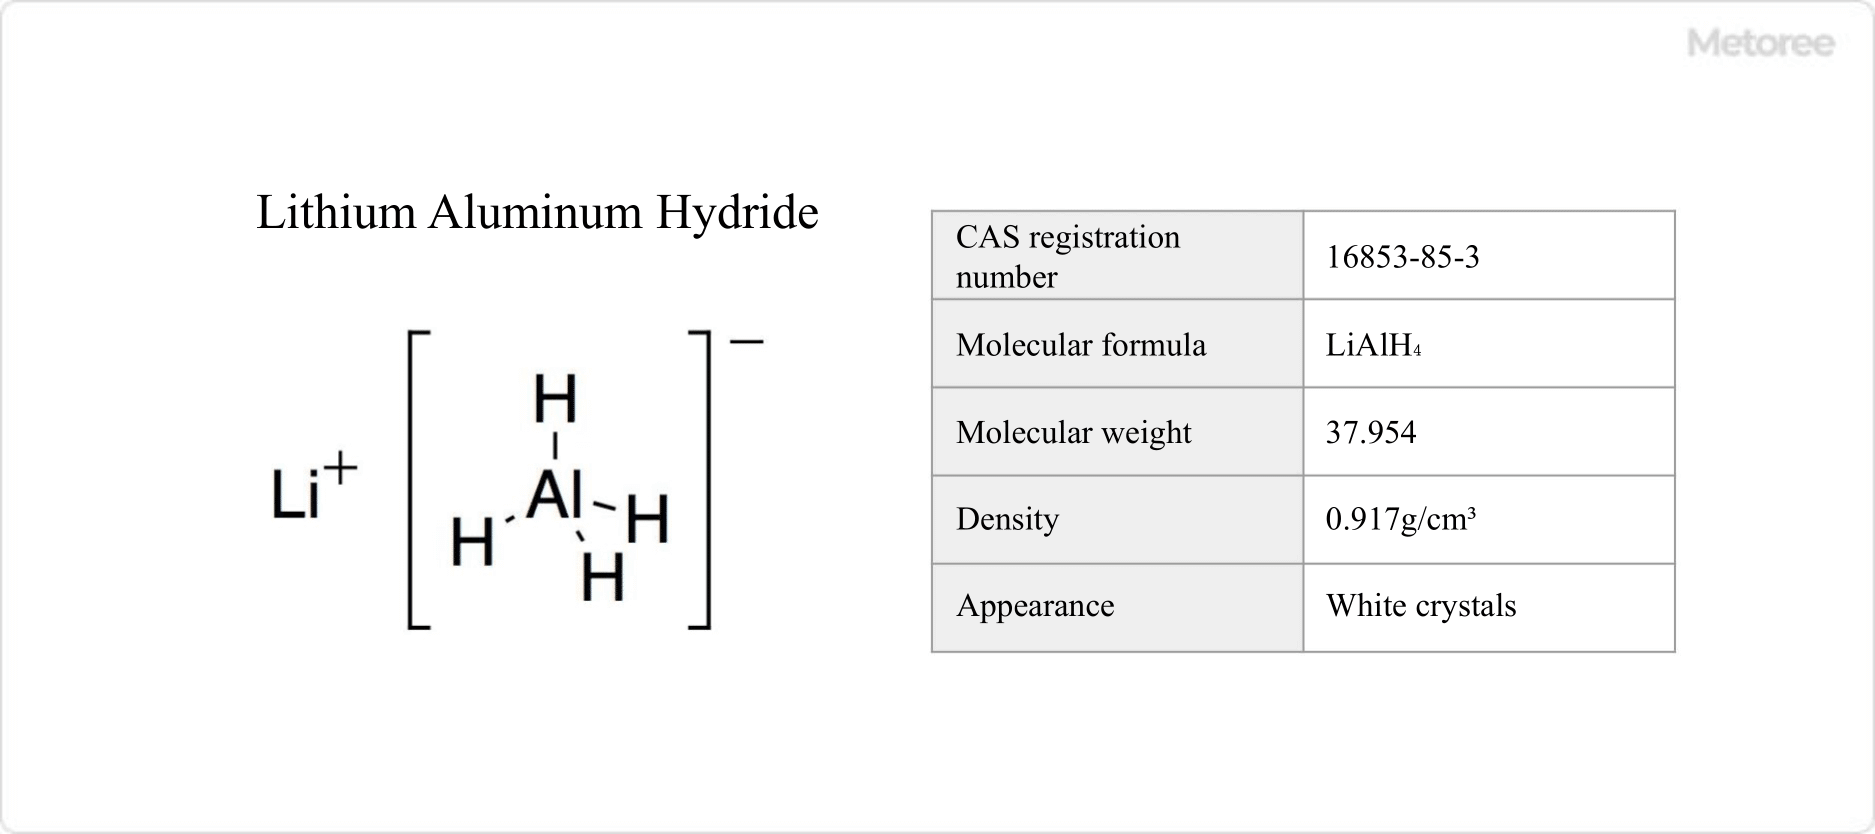 Figure 1. Basic information on aluminum lithium hydride